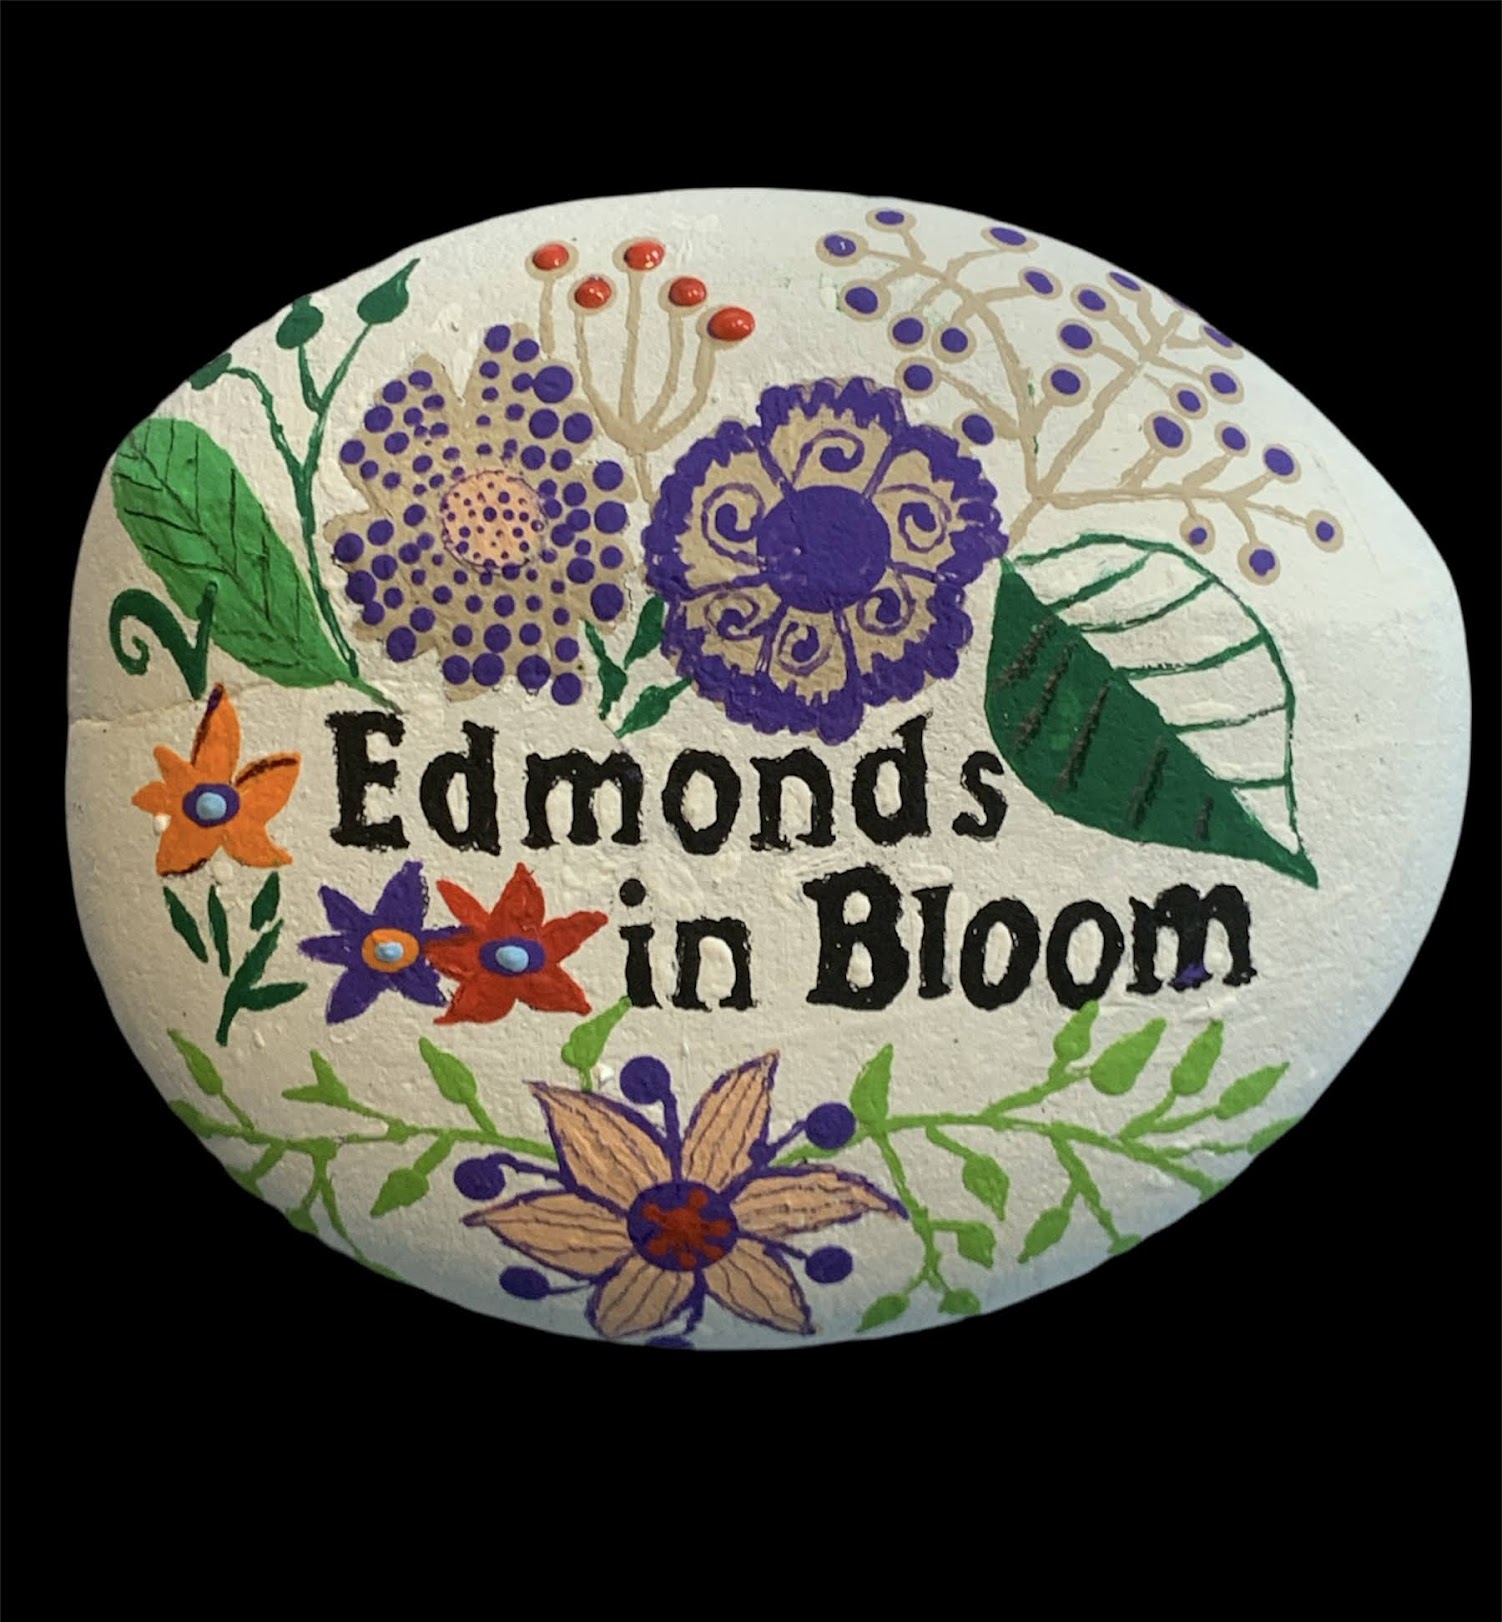 Edmonds-in-Bloom-Garden-Club